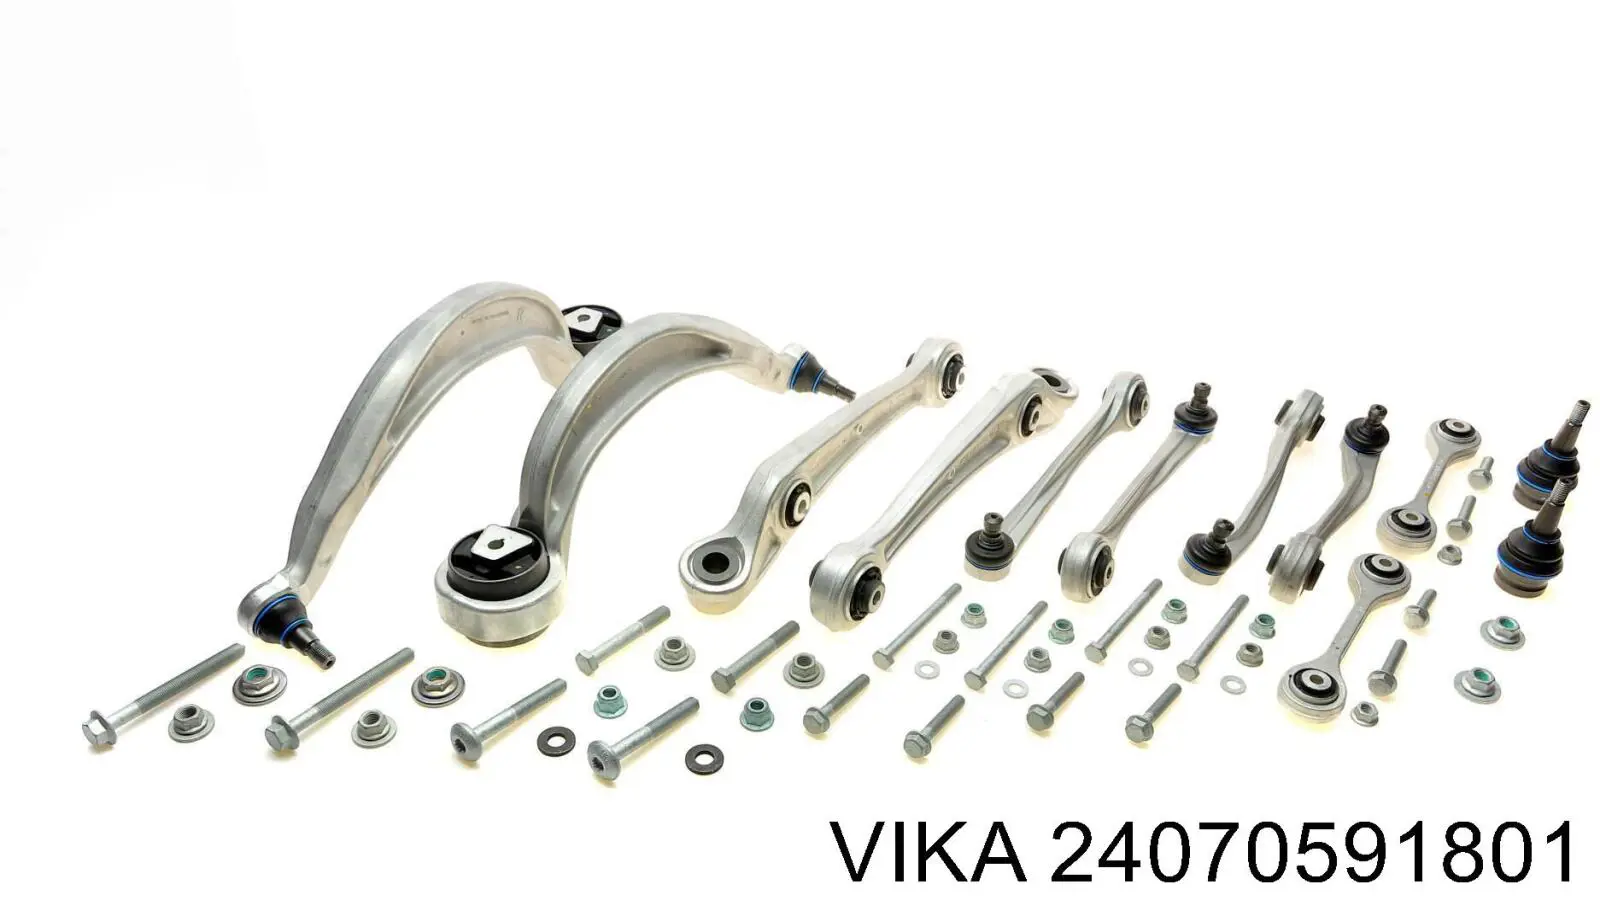 24070591801 Vika barra oscilante, suspensión de ruedas delantera, superior derecha